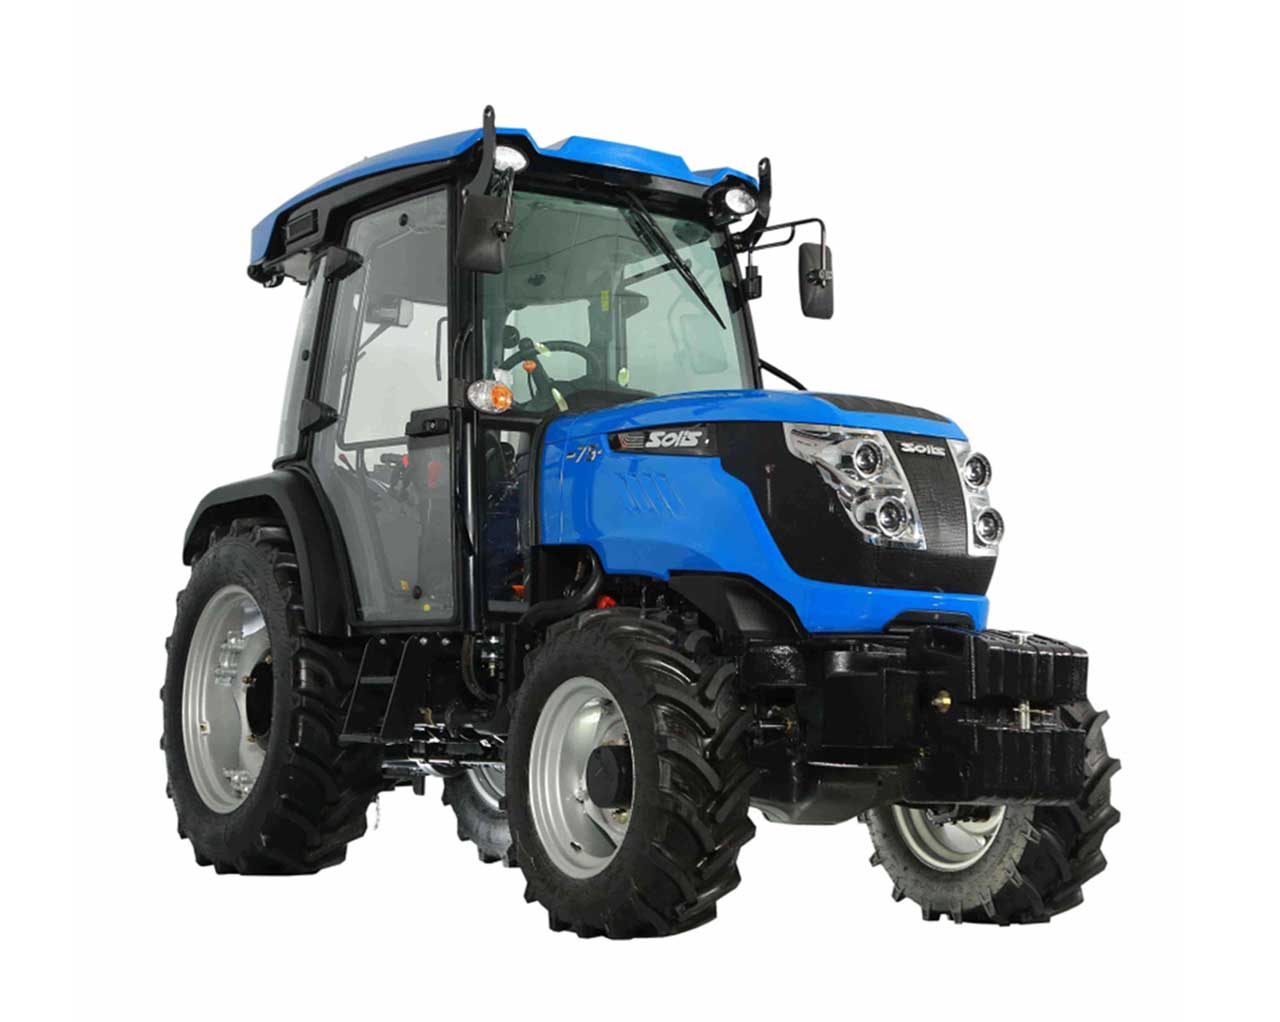 Solis N75 CRDi keskeny ültetvényes traktor